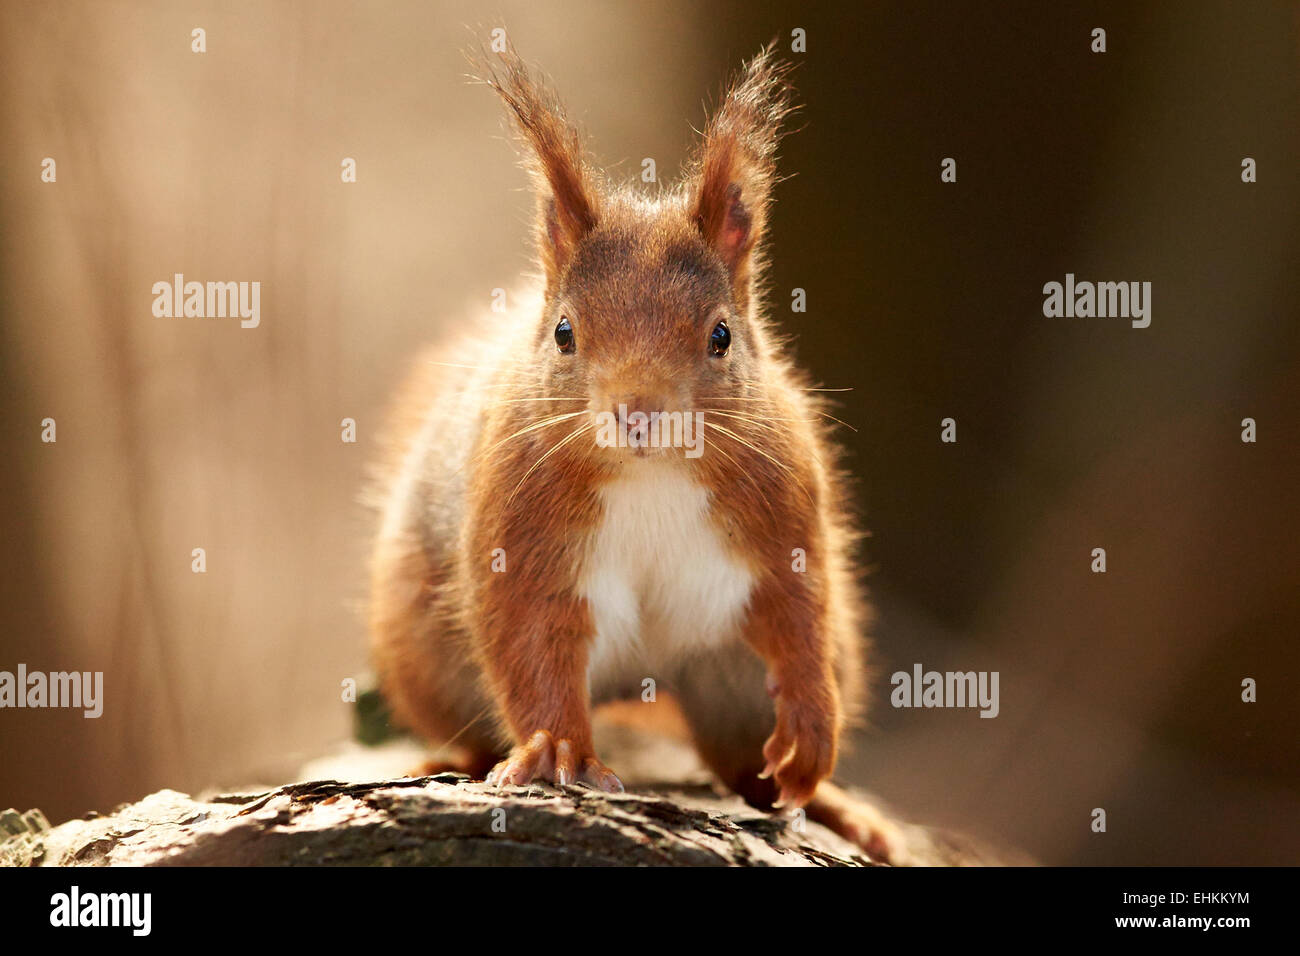 Eurasian Red Squirrel in woodland (Sciurus vulgaris) Stock Photo